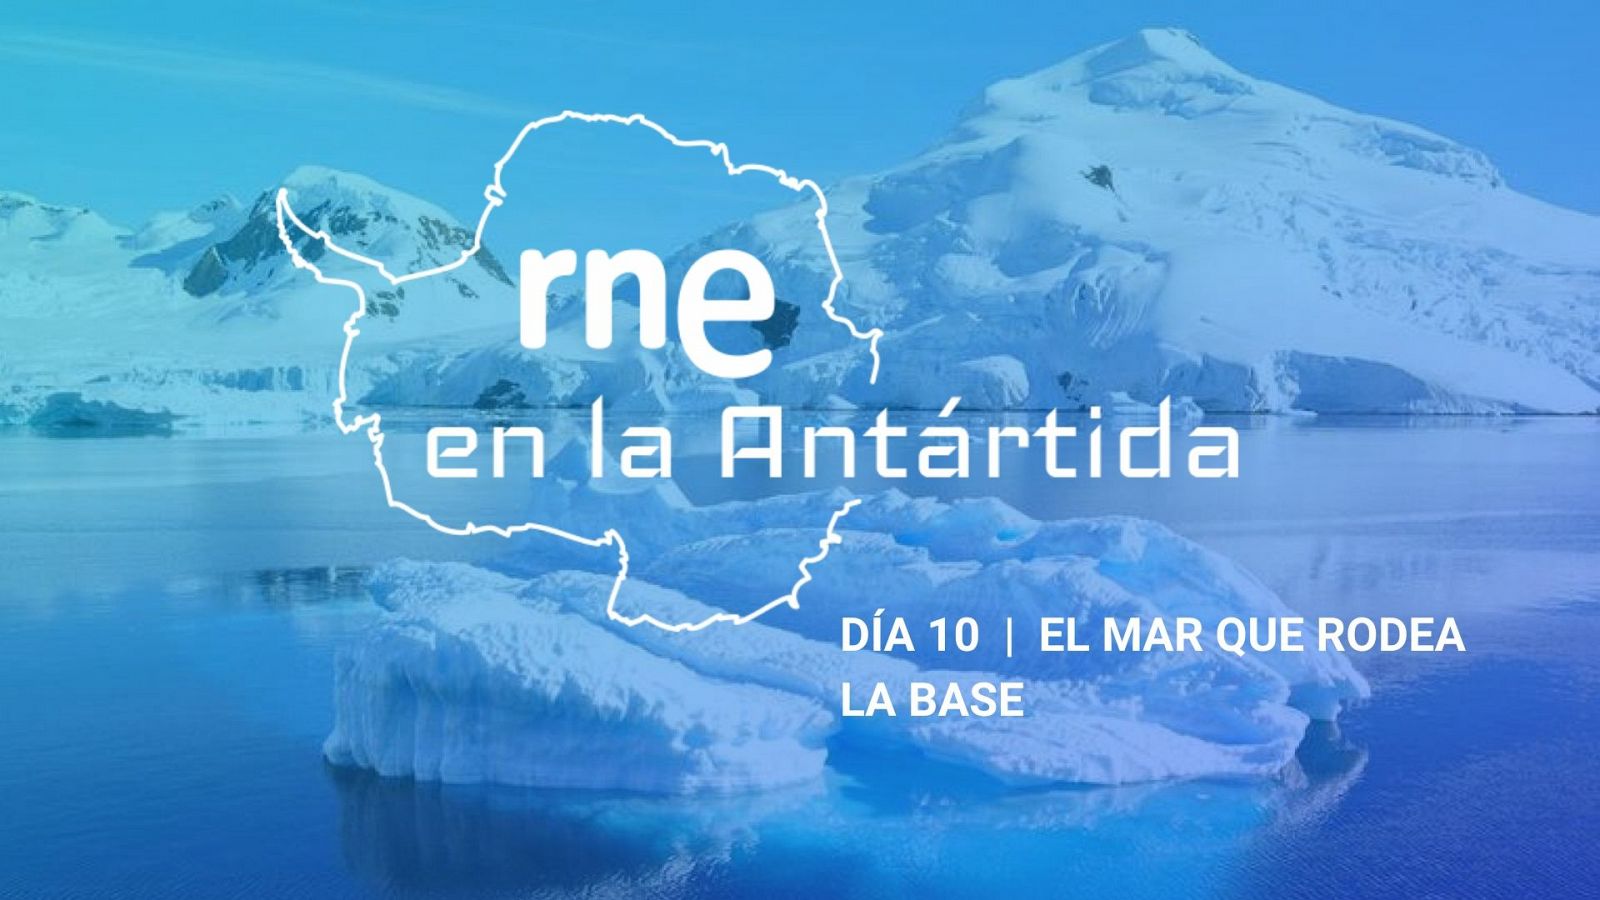 Las mañanas de RNE con Iñigo Alfonso - RNE en la Antártida | Día 10: El mar que rodea la base - Escuchar ahora